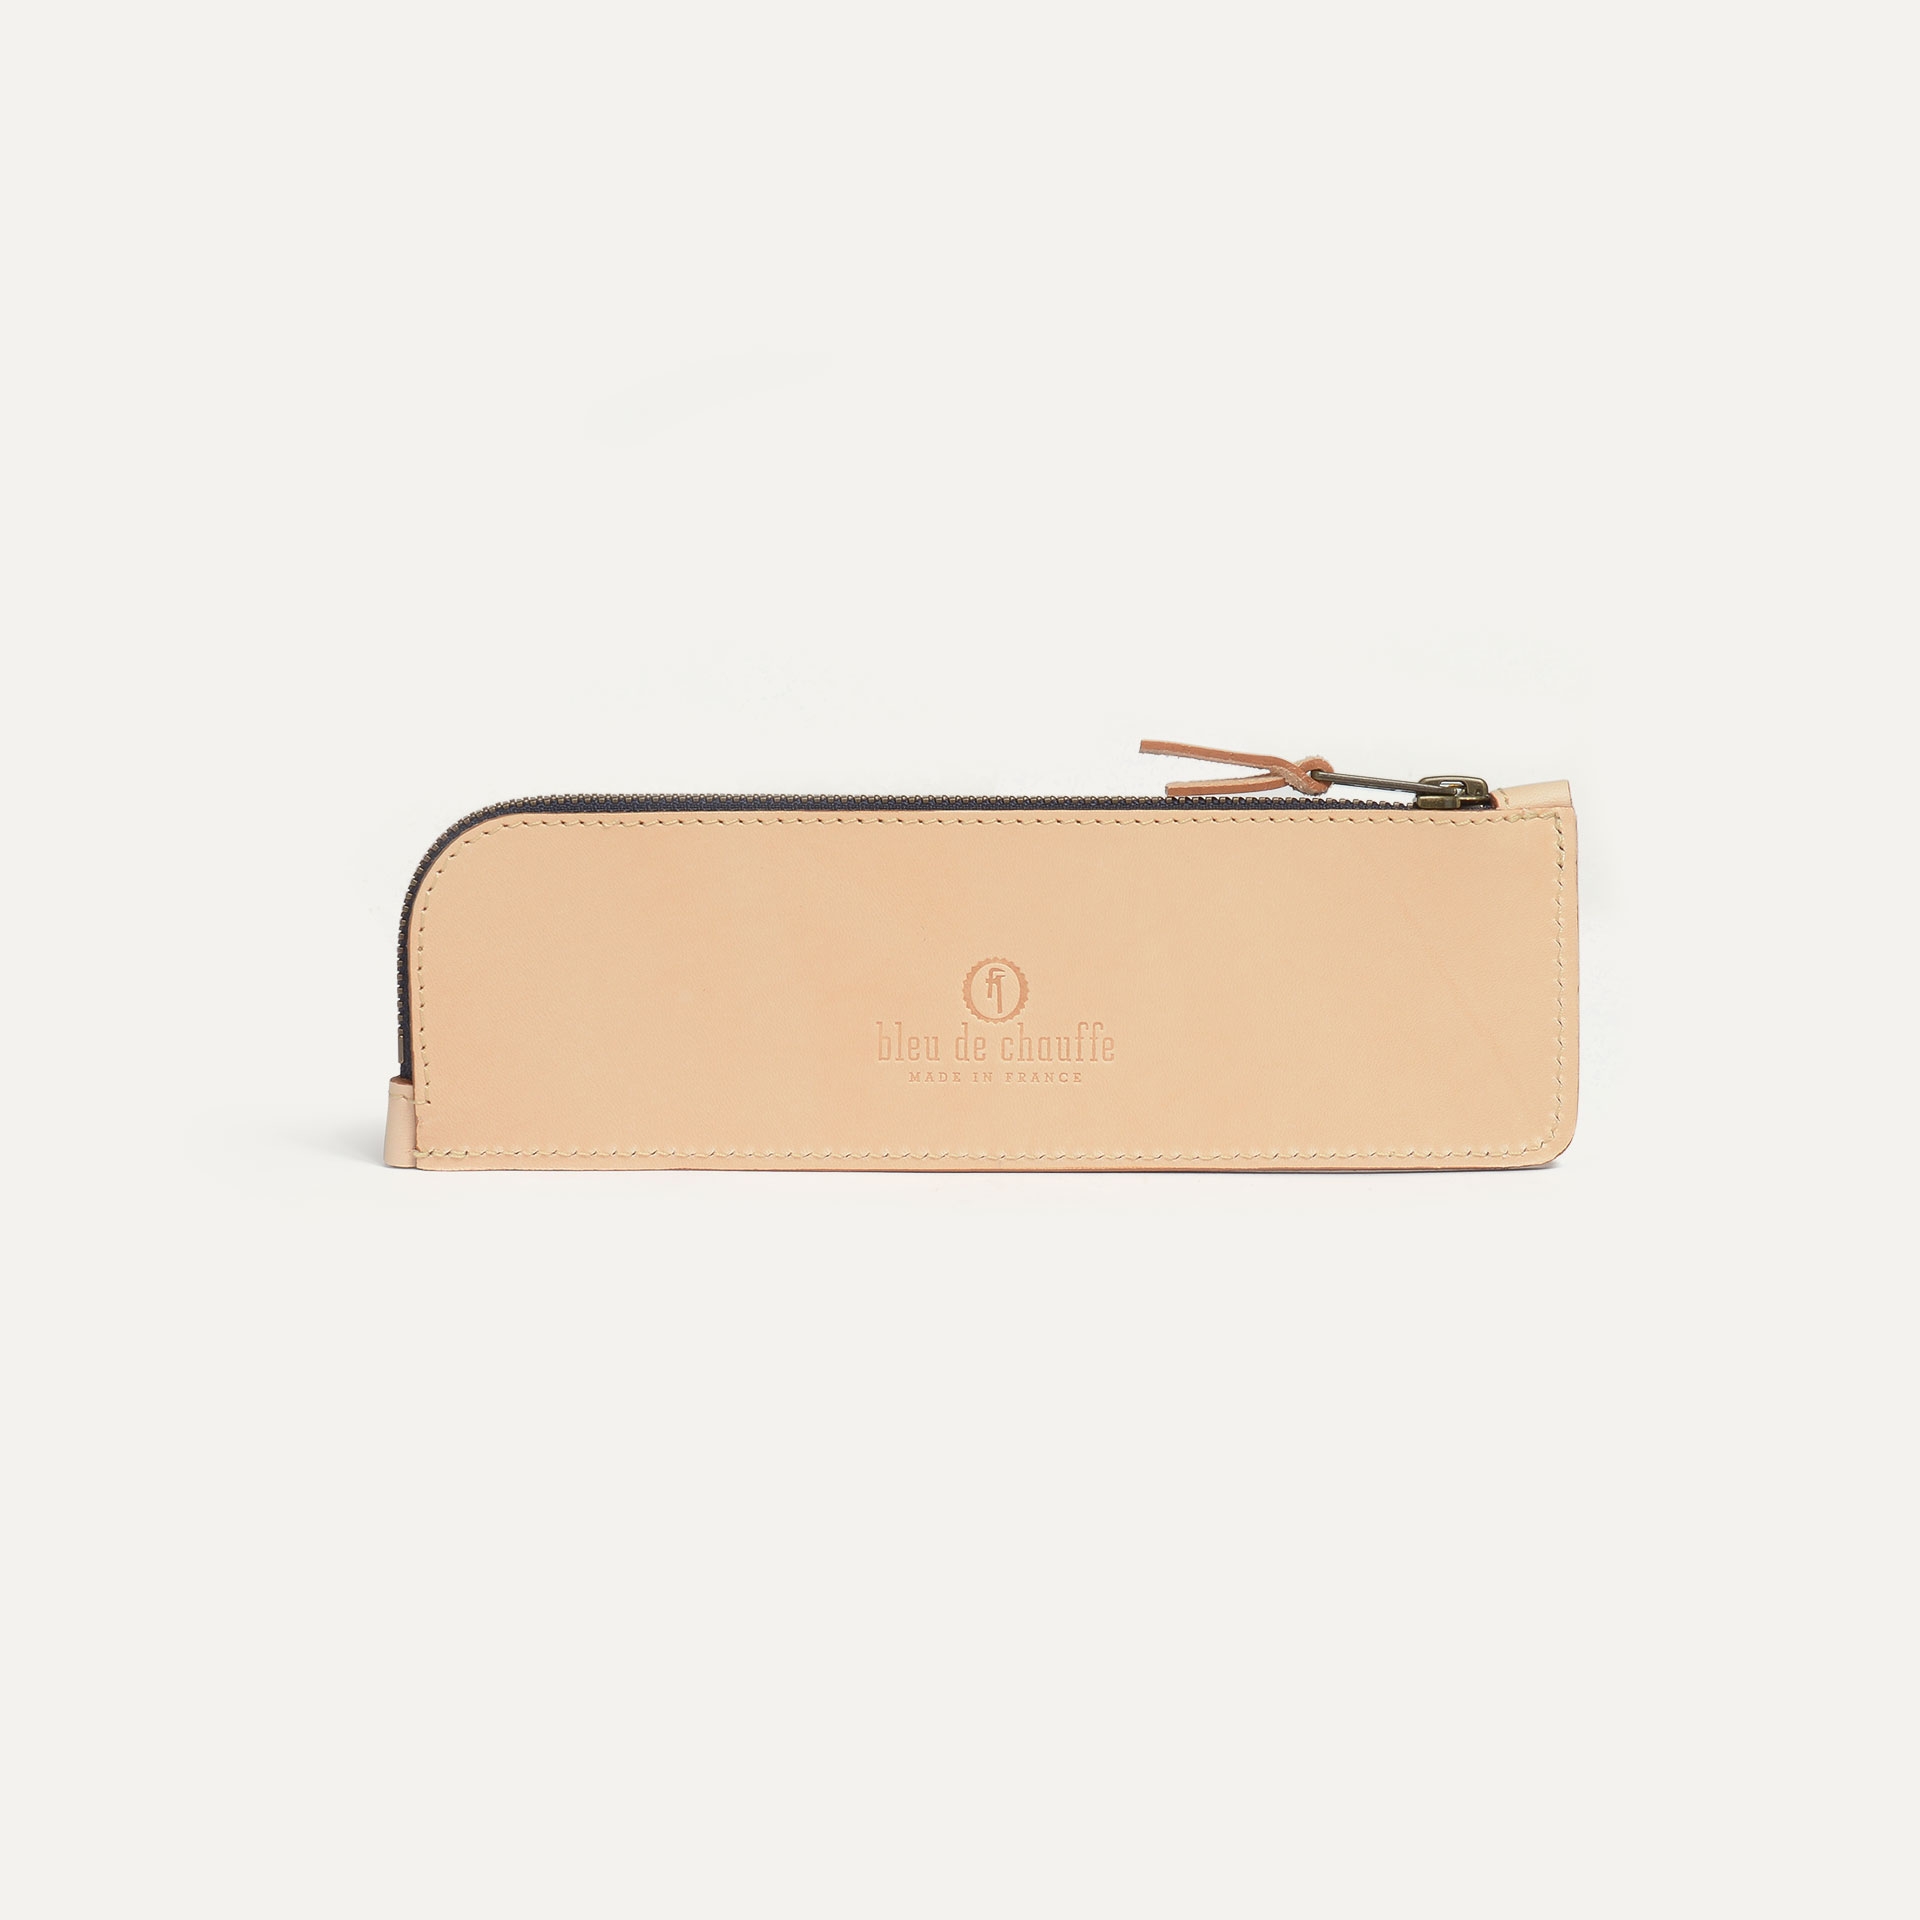 designer pencil case